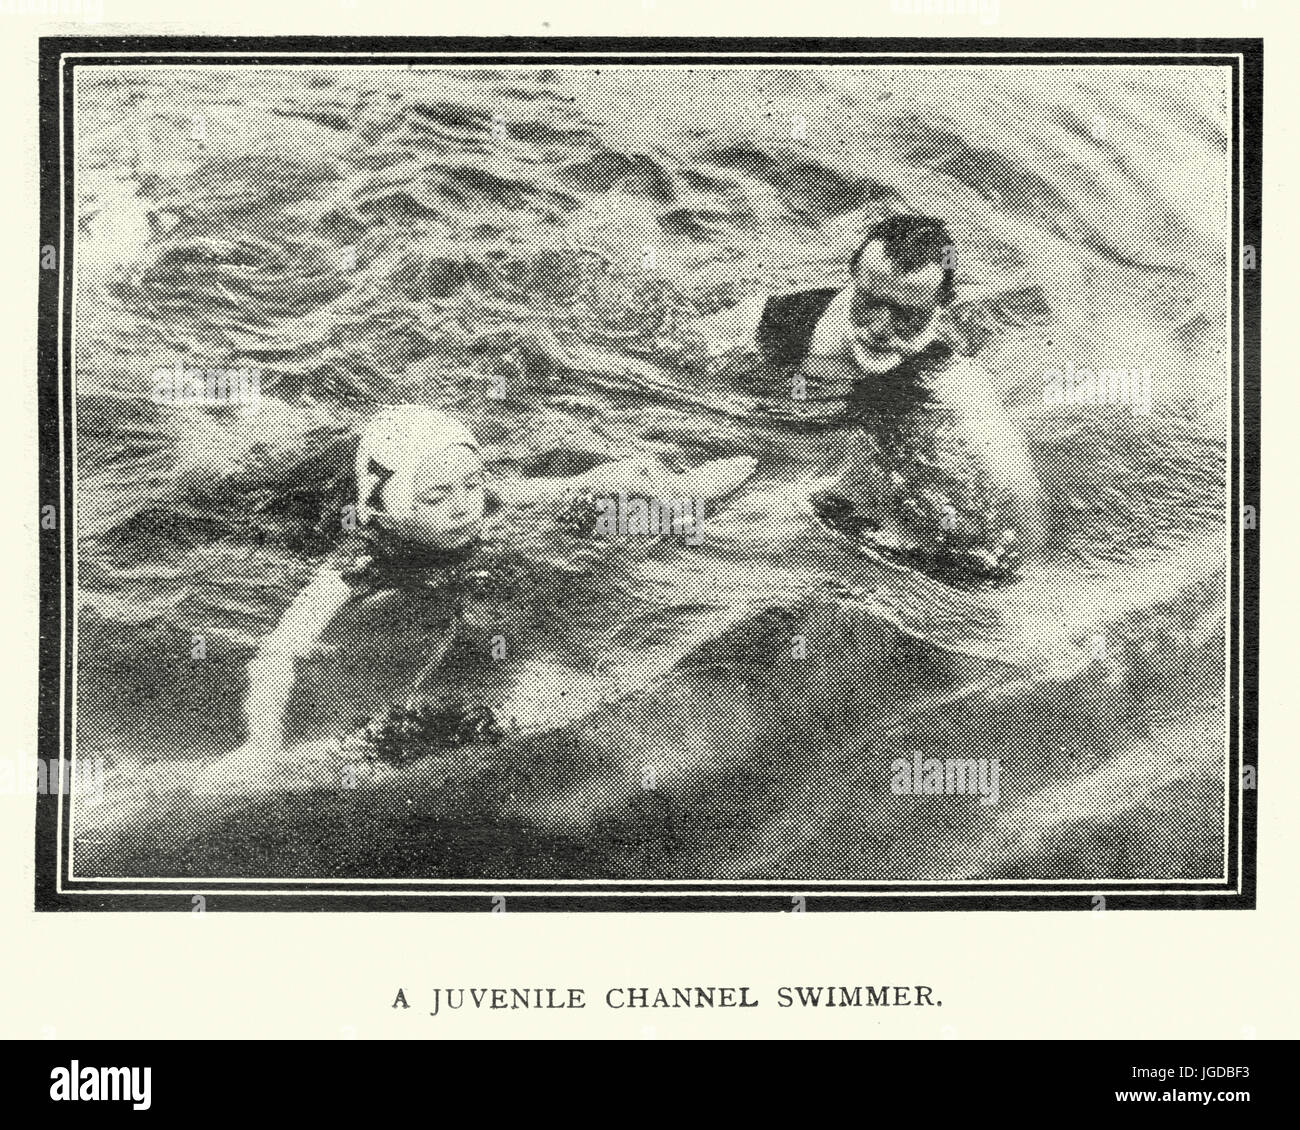 Canal juvénile nageur, c.1913 Banque D'Images